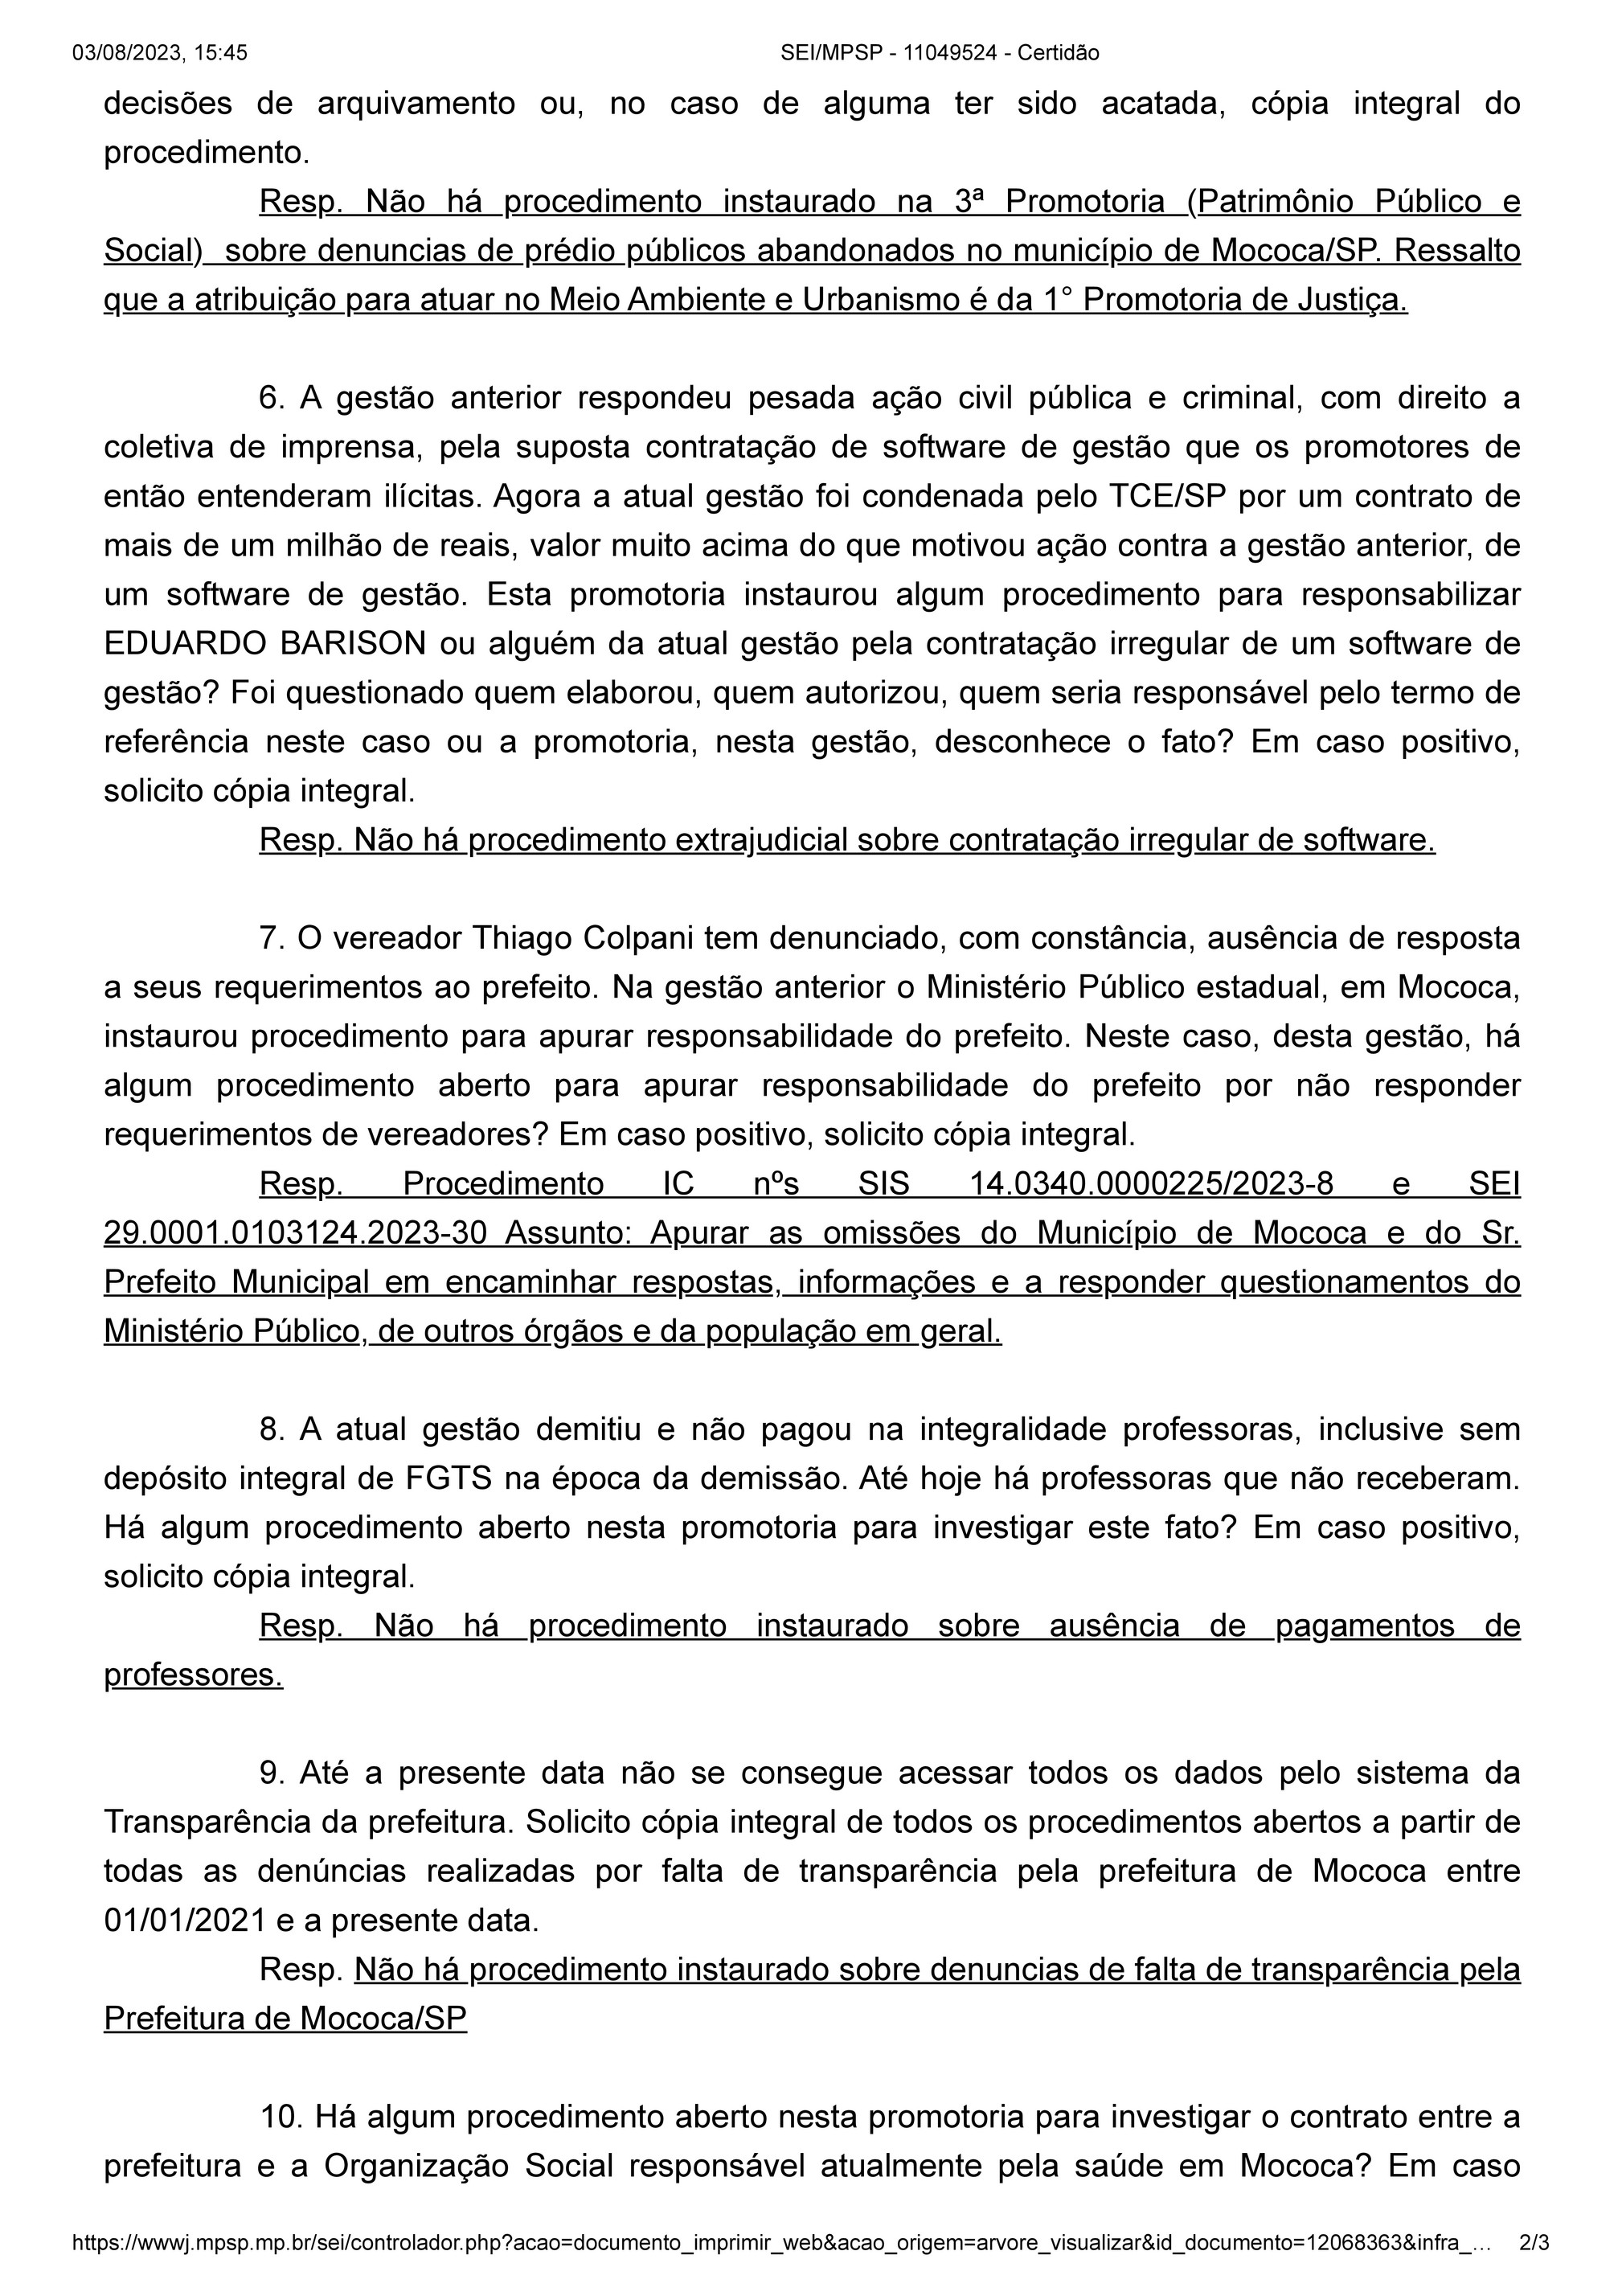 jornaldemocrata - SEI_MPSP - 11049524 - Resposta MPSP questionamentos  julho2023 - Página 1 - Created with Publitas.com